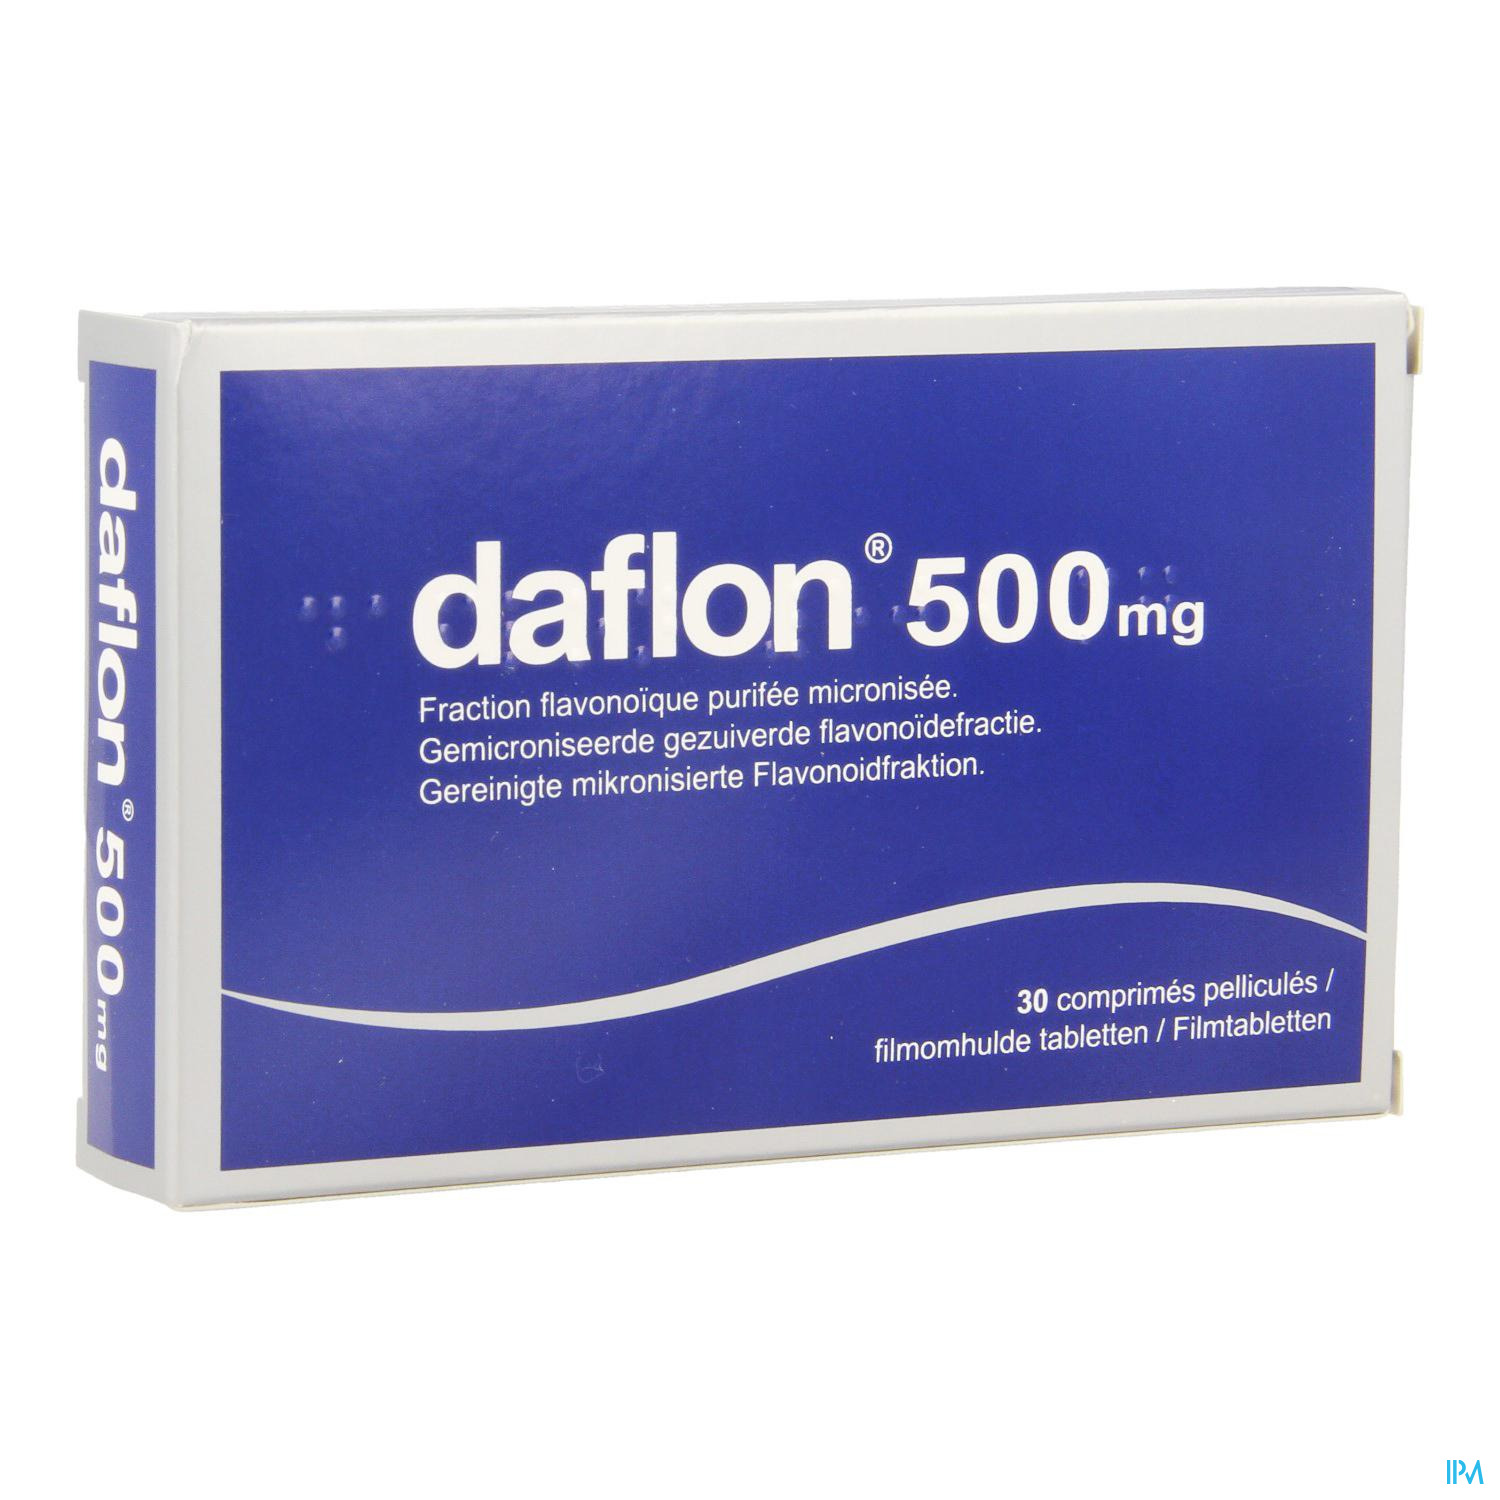 Таблетки от геморроя купить. Daflon 500mg турецкий. Daflon 500 детралекс. Daflon 500 таблетки из Турции. Лекарство Daflon 500 60.